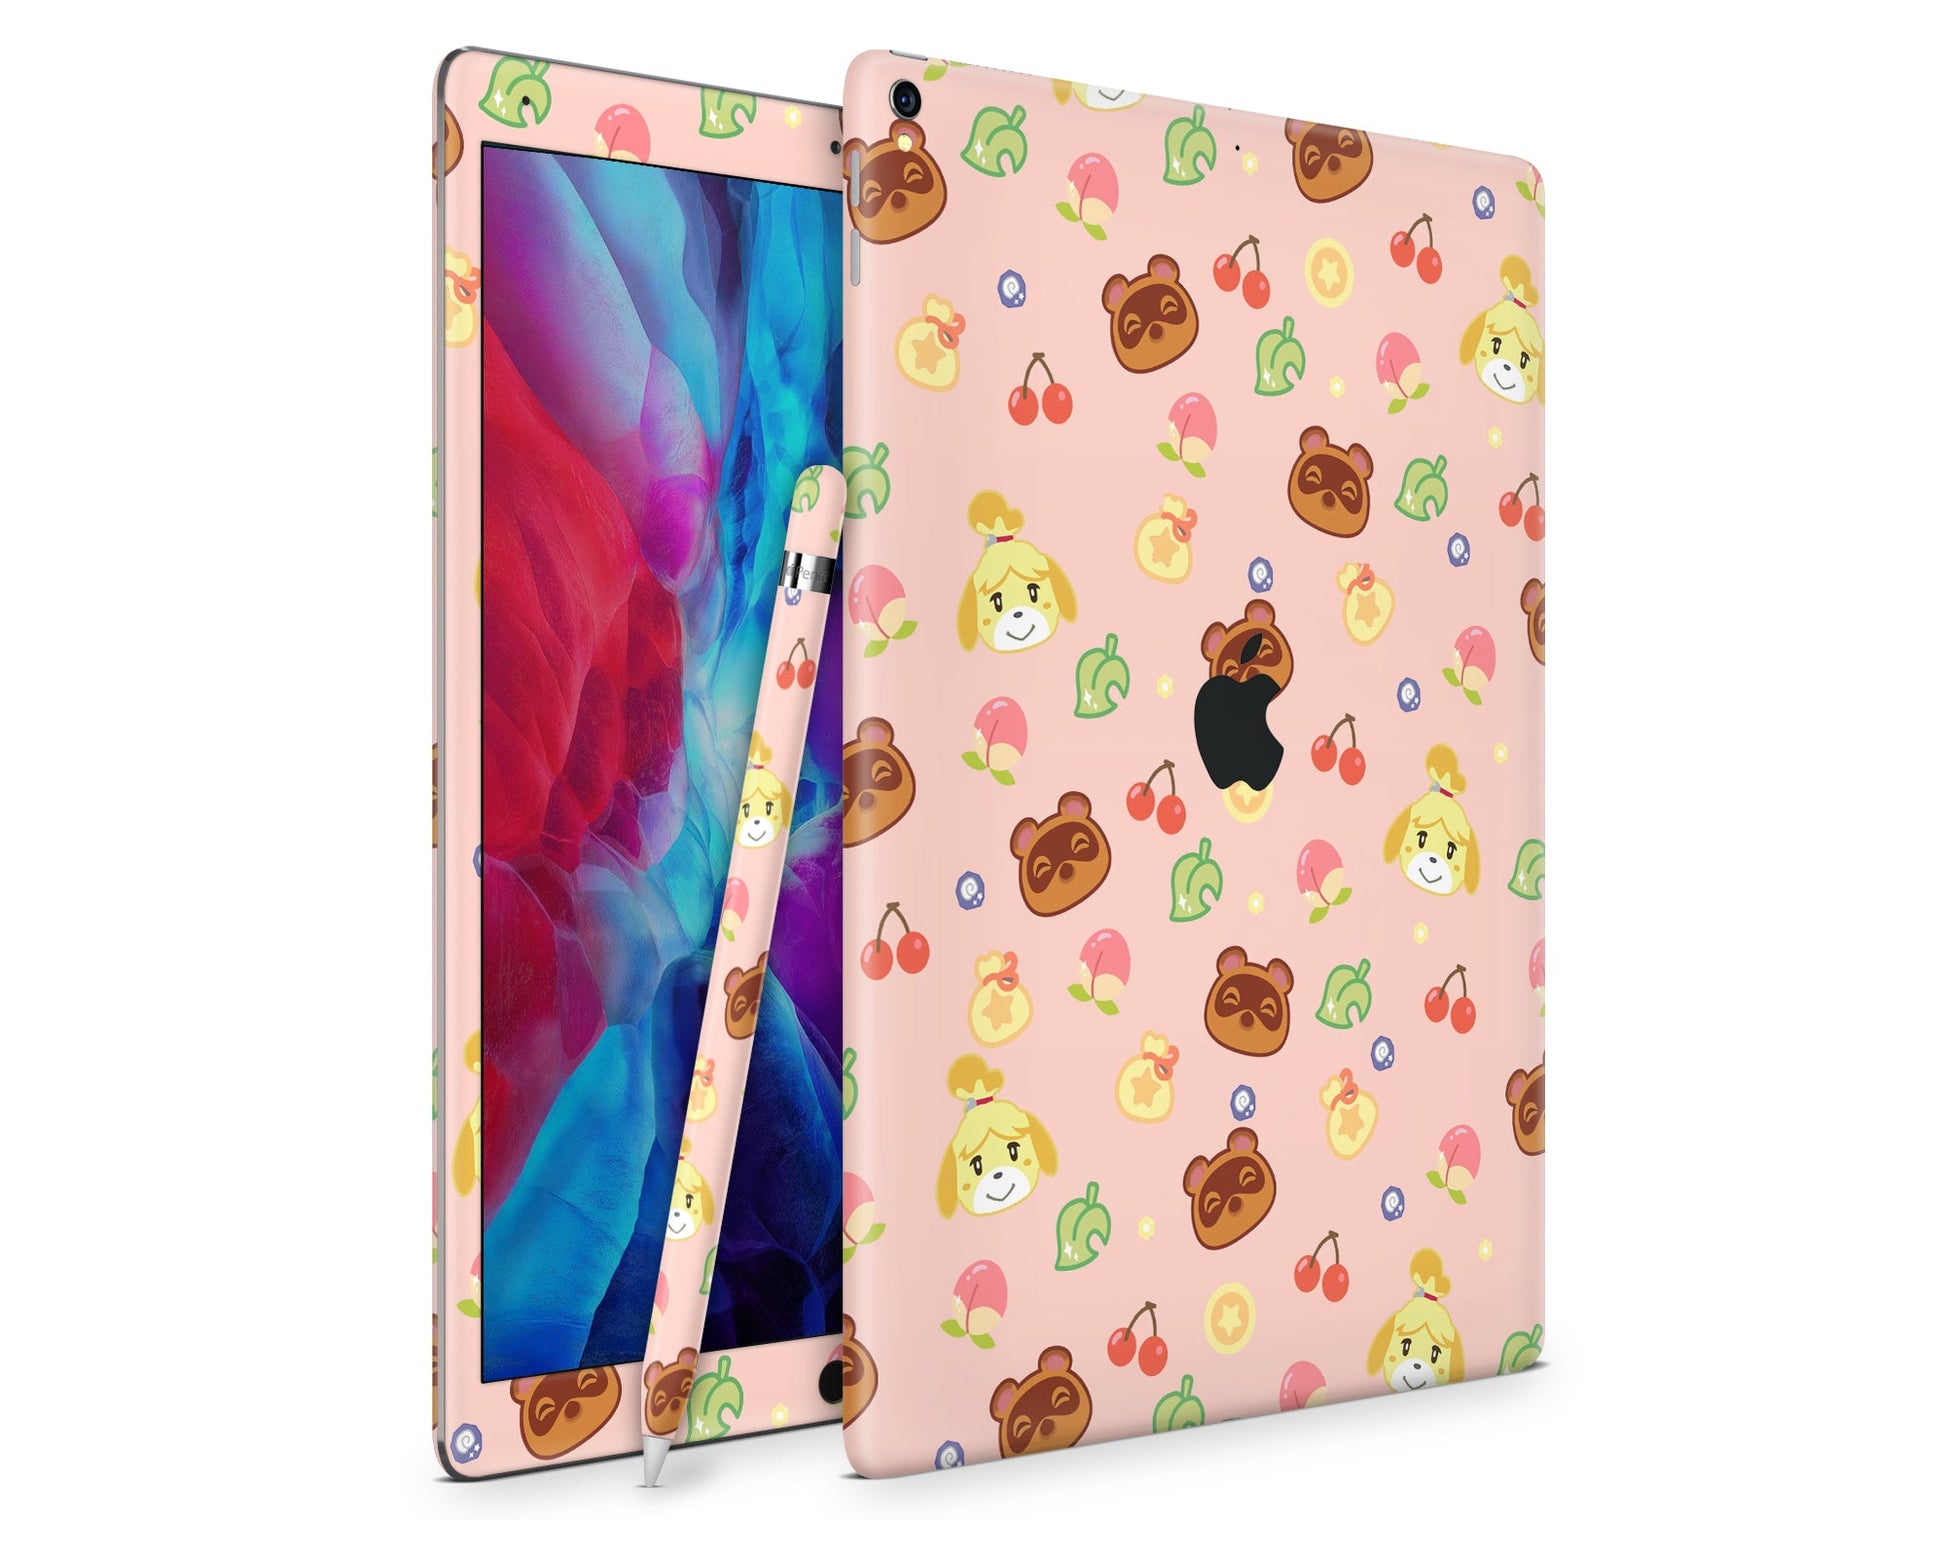 Lux Skins iPad Cute Animal Crossing Pattern iPad Pro 12.9" Gen 5 Skins - Pop culture Animal Crossing Skin